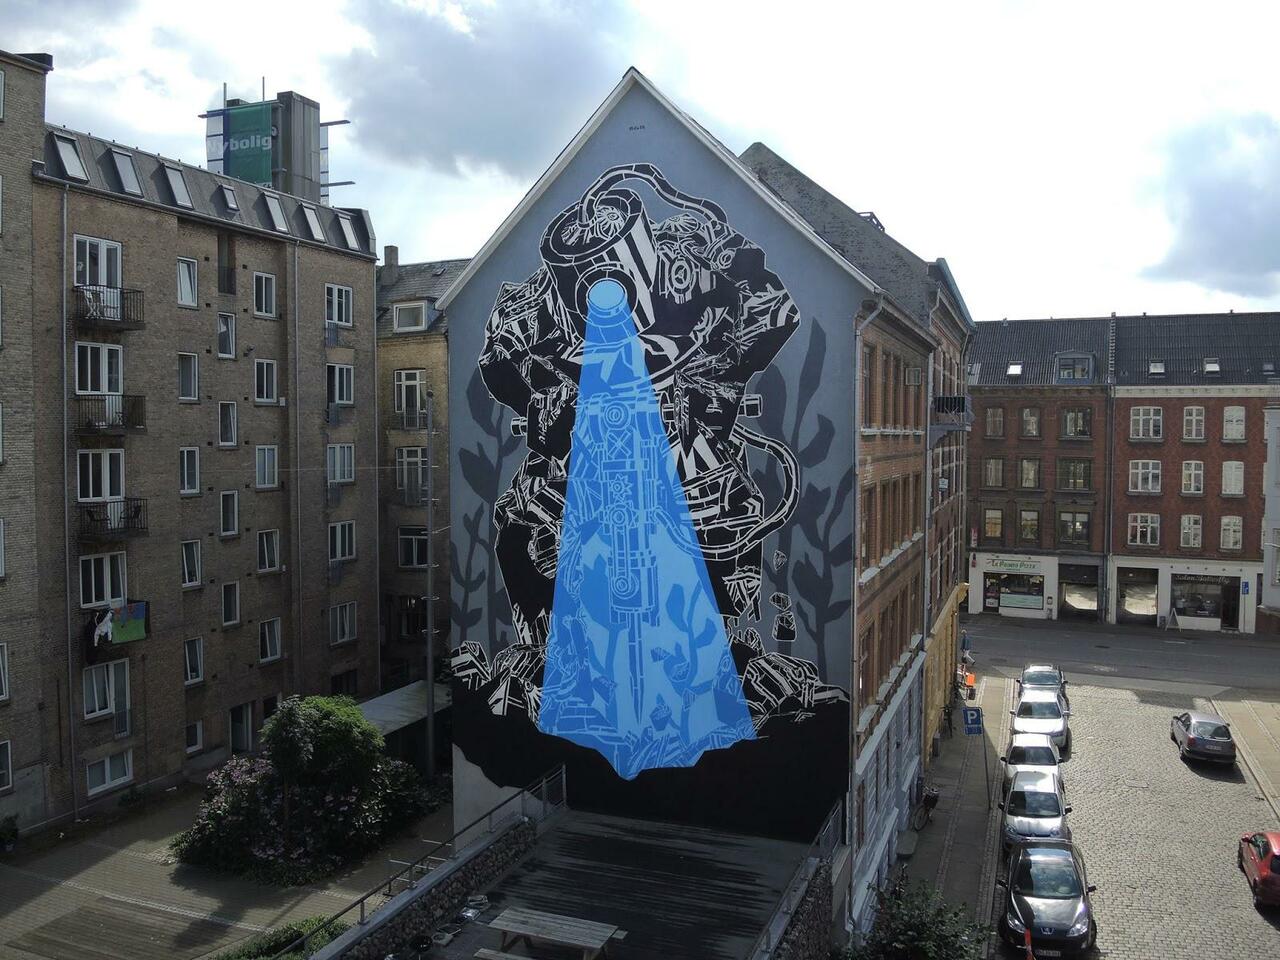 M-City paints a new mural in Aalborg, Denmark. #StreetArt #Graffiti #Mural http://t.co/AZXNNNfnmb